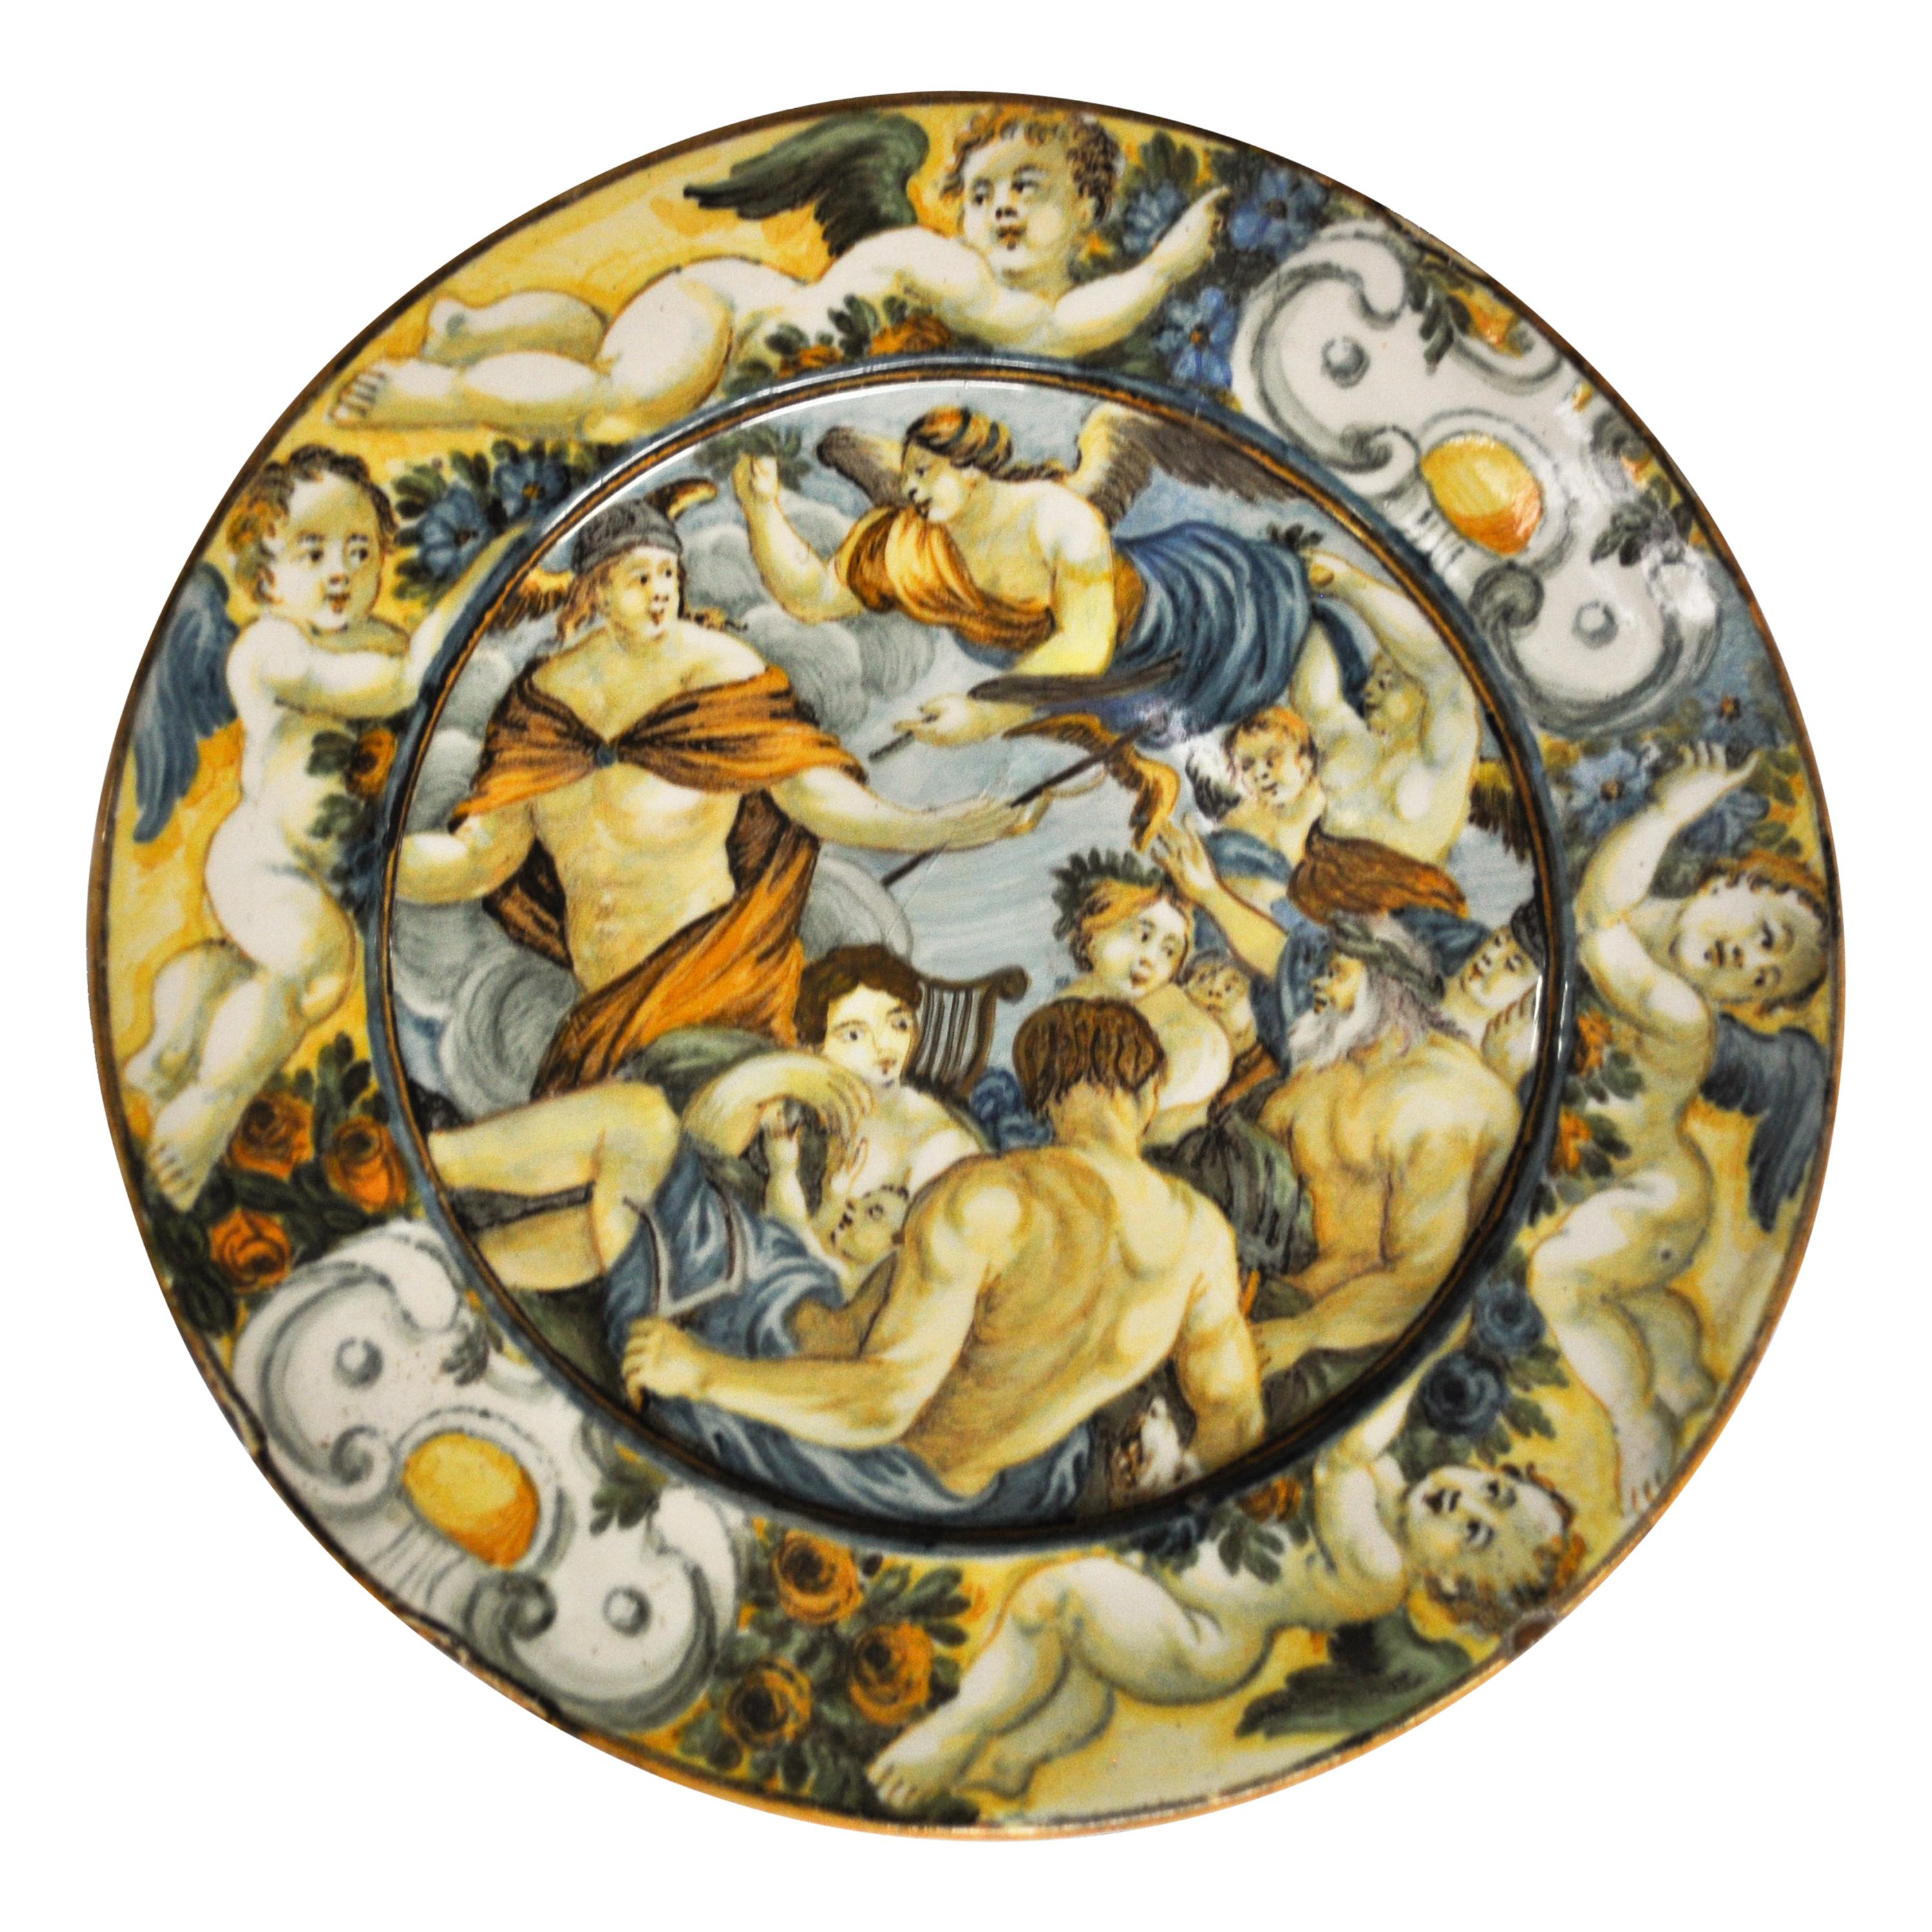 Castelli Ceramic Plate, Made in Abruzzo, Italy, 17th Century